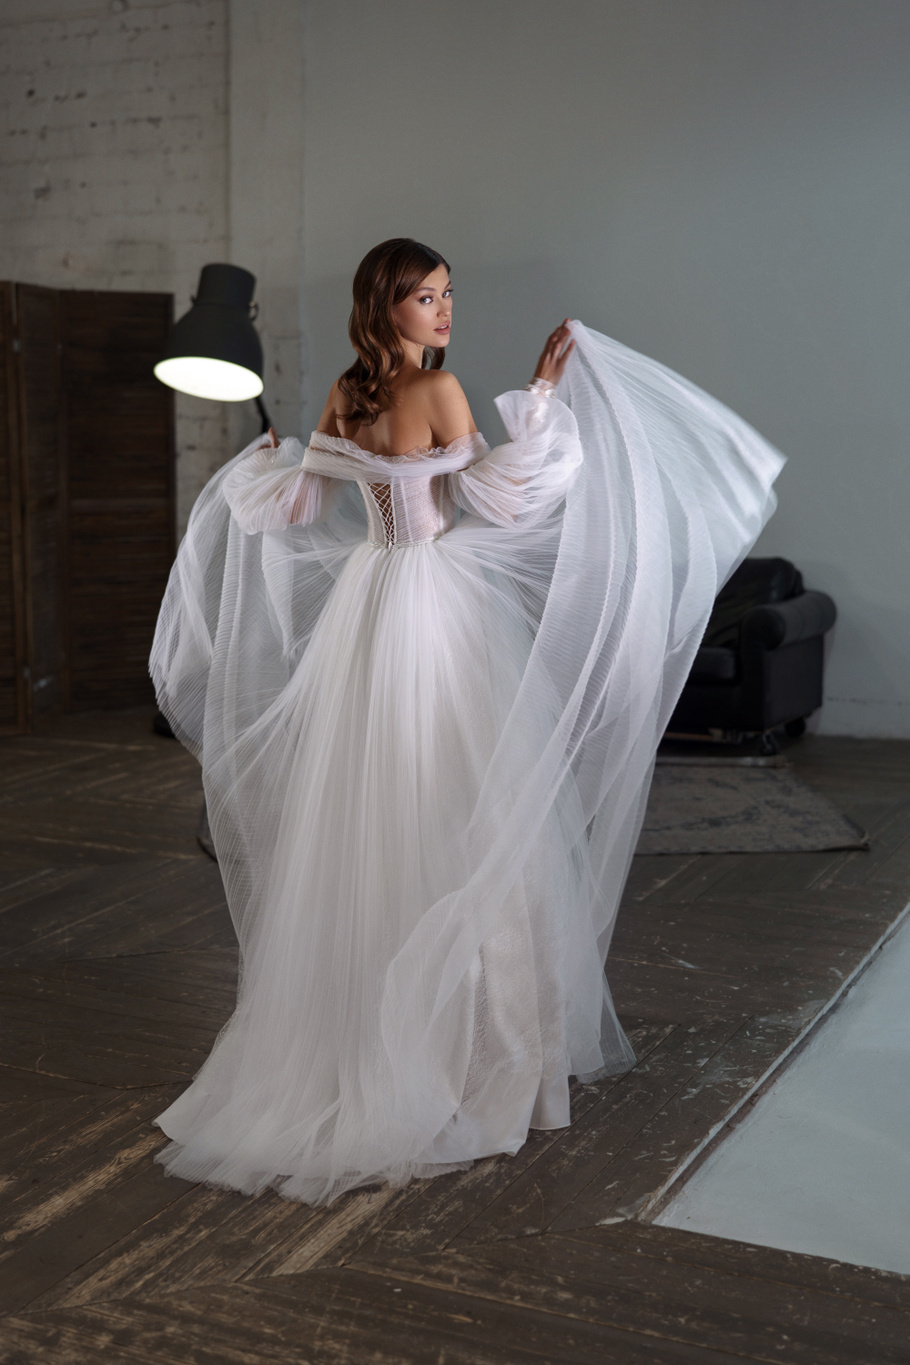 Купить свадебное платье «Фея» Патрисия из коллекции 2020 года в Краснодаре